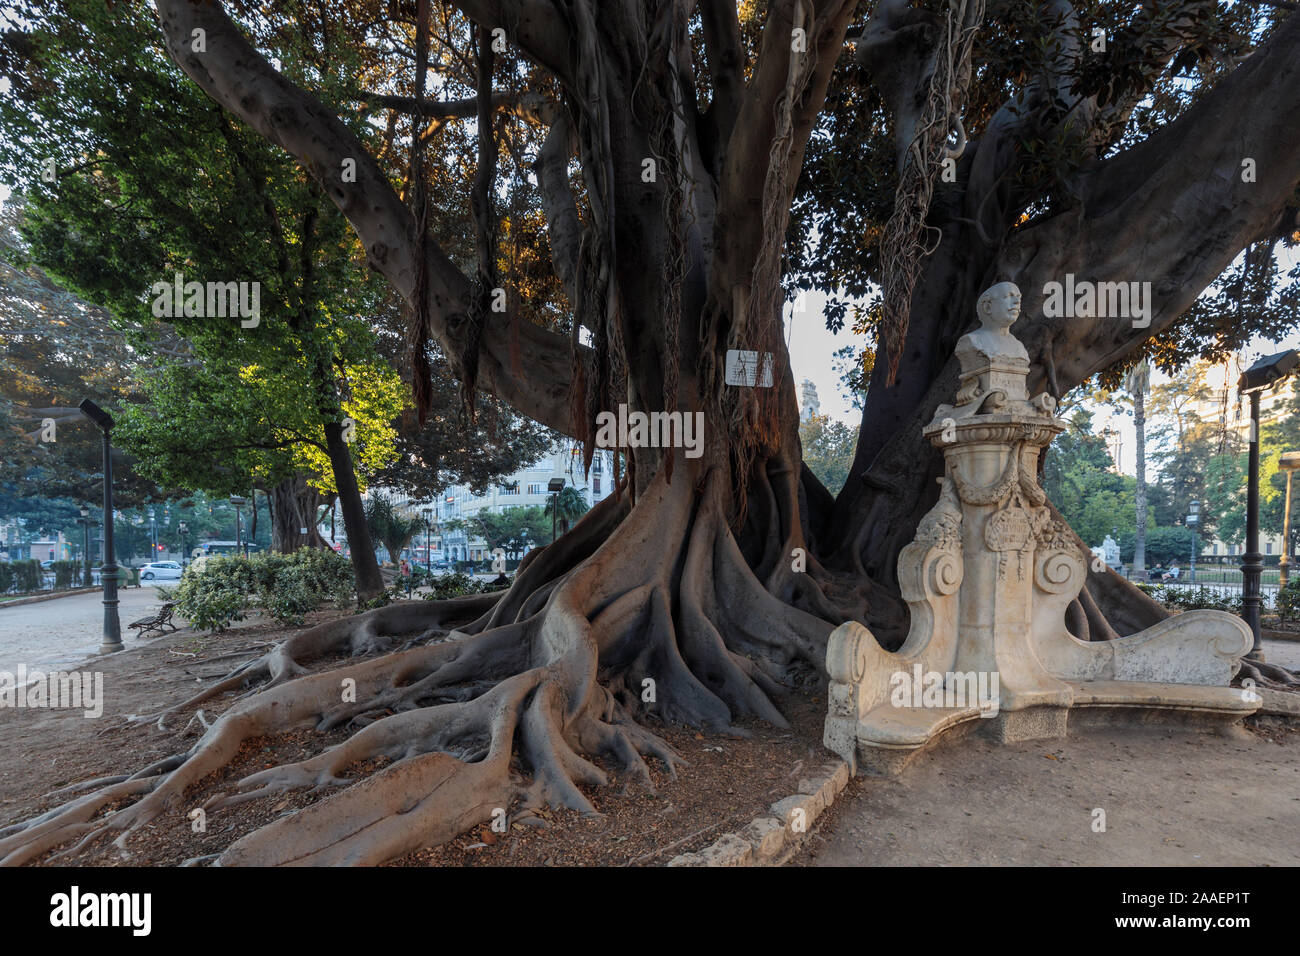 Der Würger Baum, Moreton Bay Feigenbaum (Ficus macrophylla), die ursprünglich aus Australien importiert. Valencia, Spanien, Europa Stockfoto